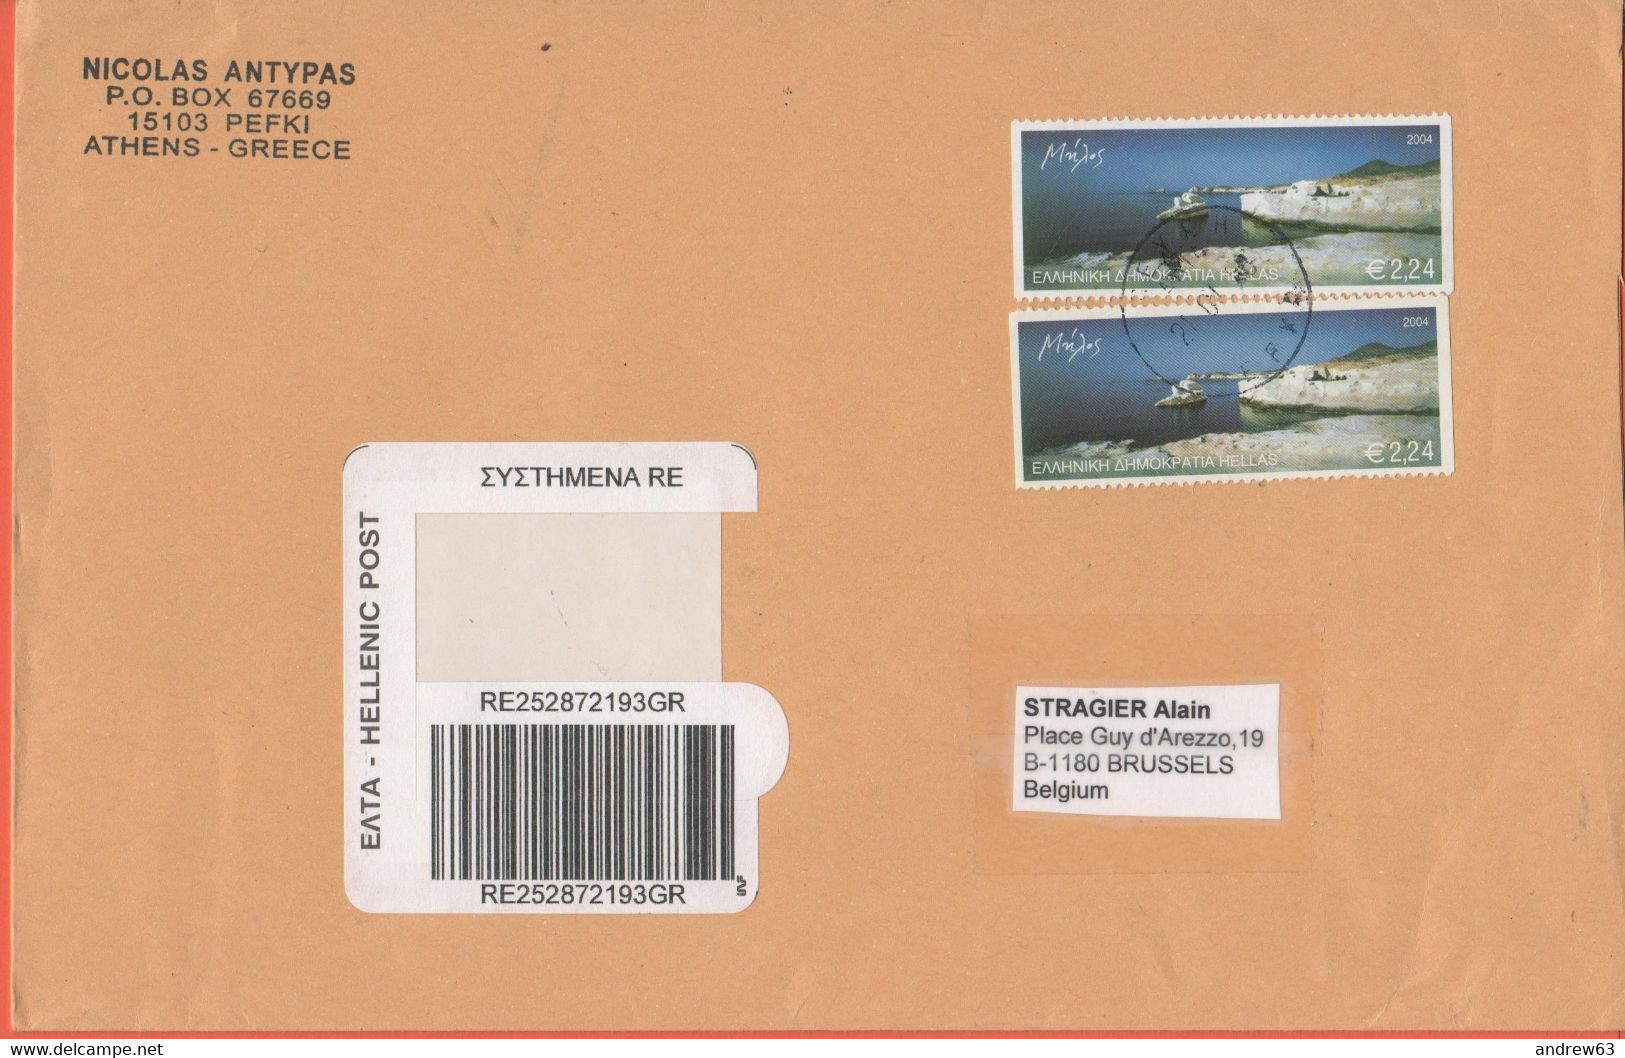 GRECIA - GREECE - GRECE - GRIECHENLAND - 2008 - 2 X Melos 2004 - Registered - Medium Envelope - Viaggiata Da Pefki Per B - Lettres & Documents